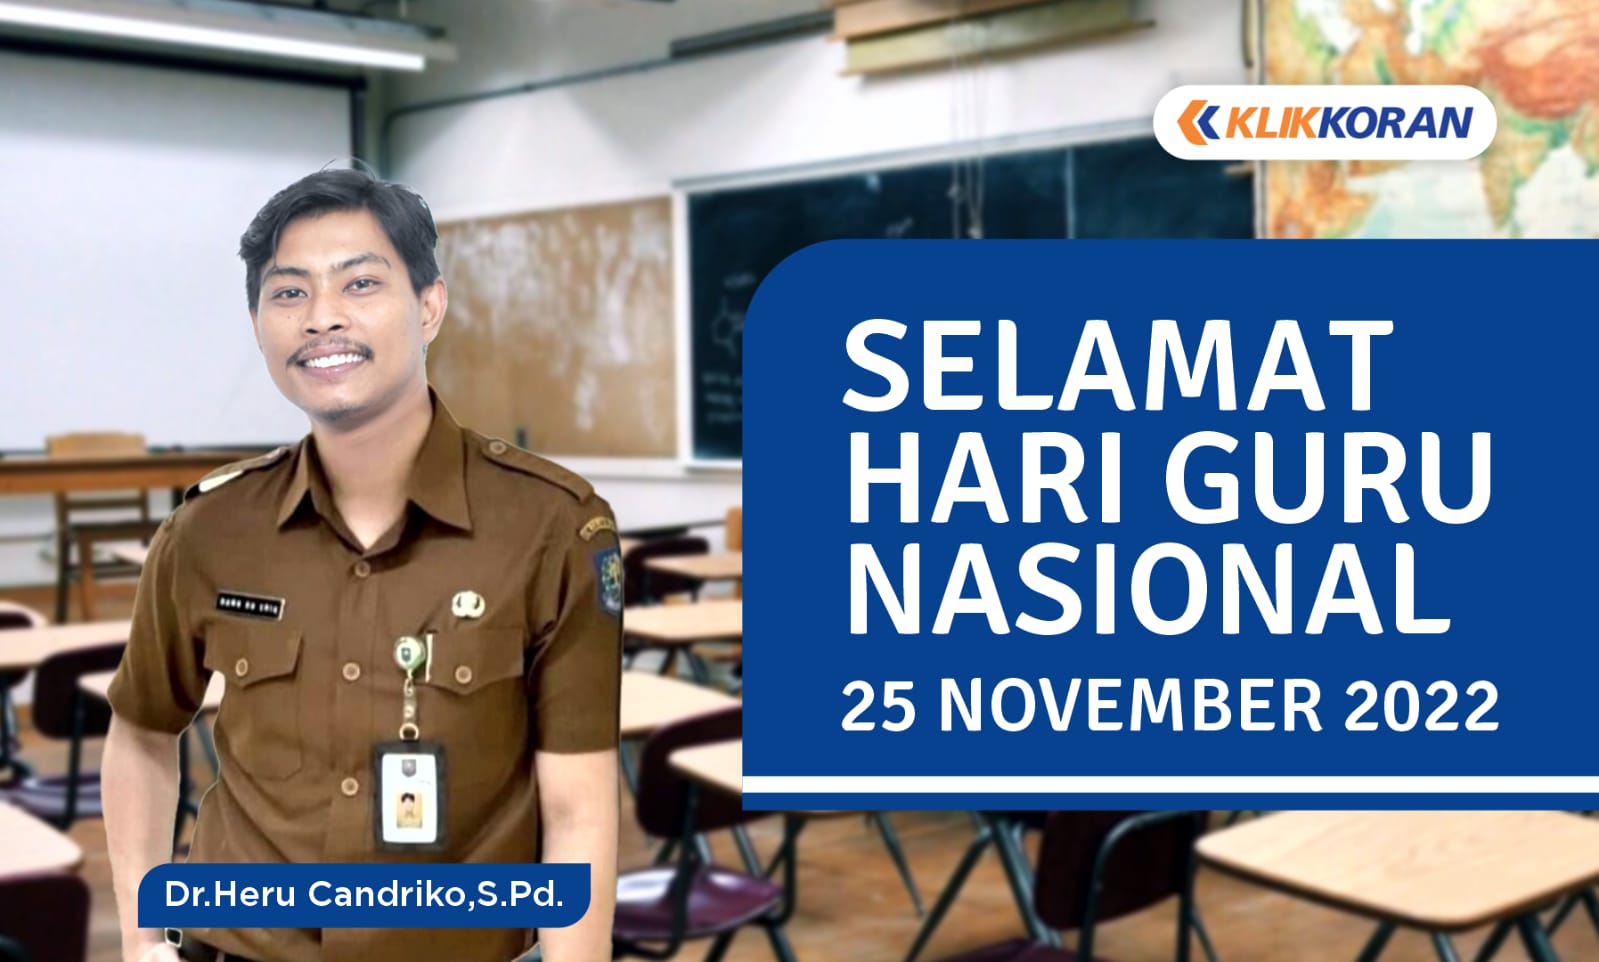 Hari Guru Nasional 25 November 2022. (Foto: Klikkoran.com)